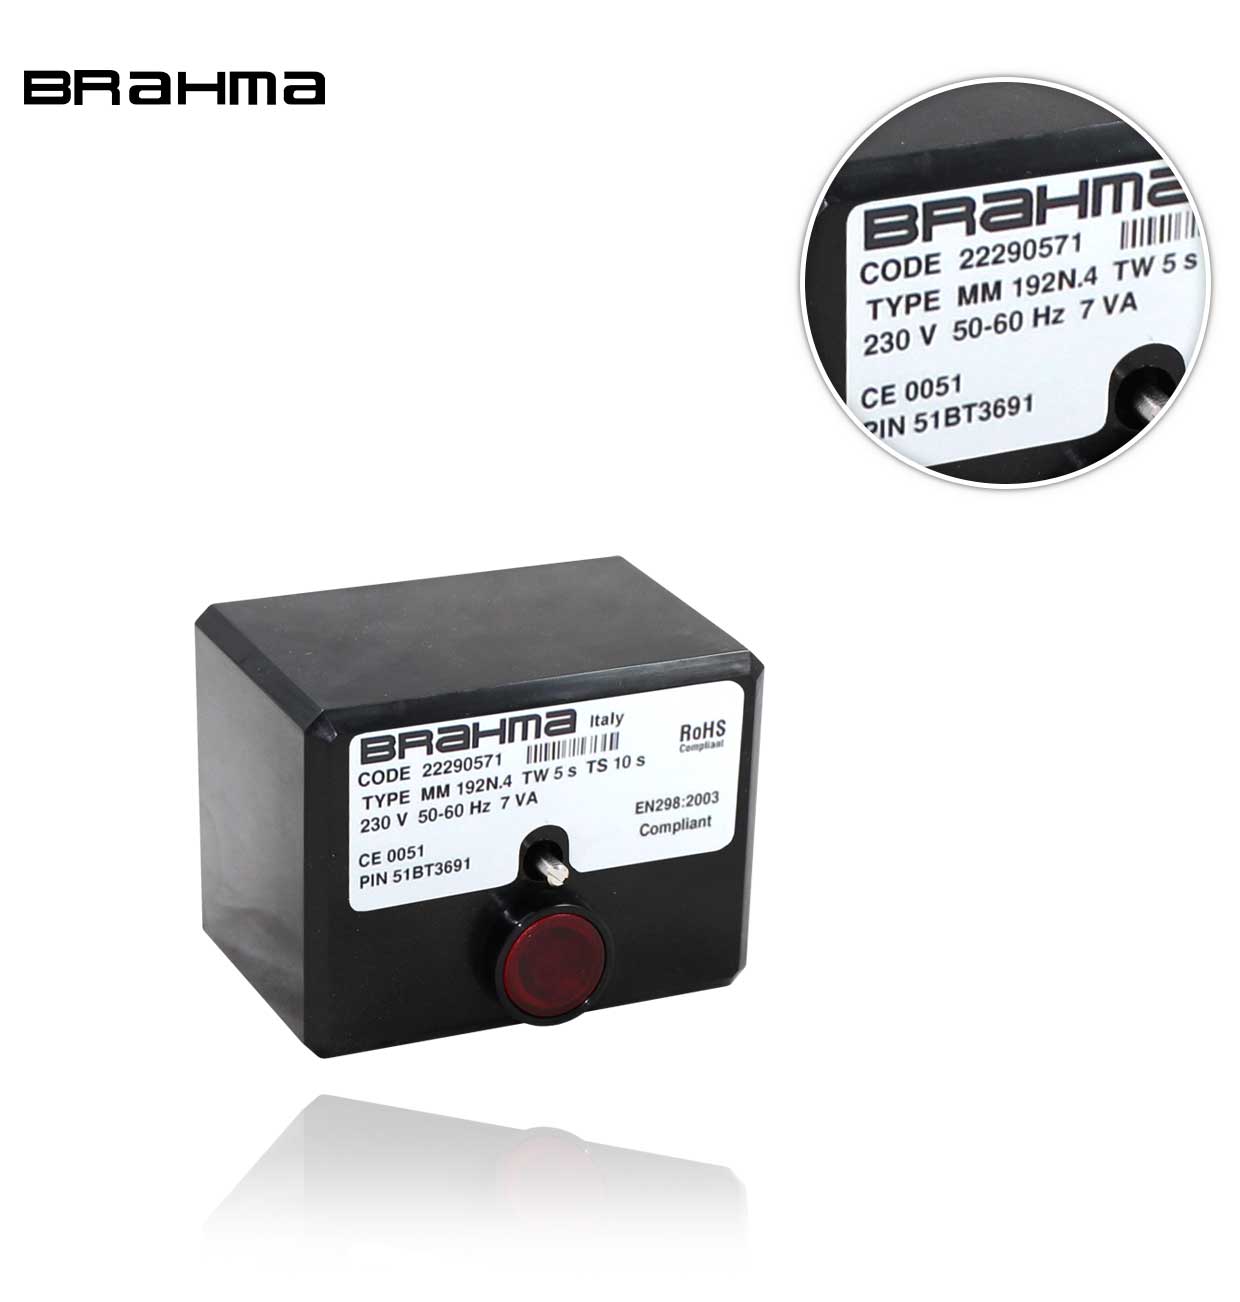 MM 192N.4 BRAHMA GAS EUROBOX CONTROL BOX